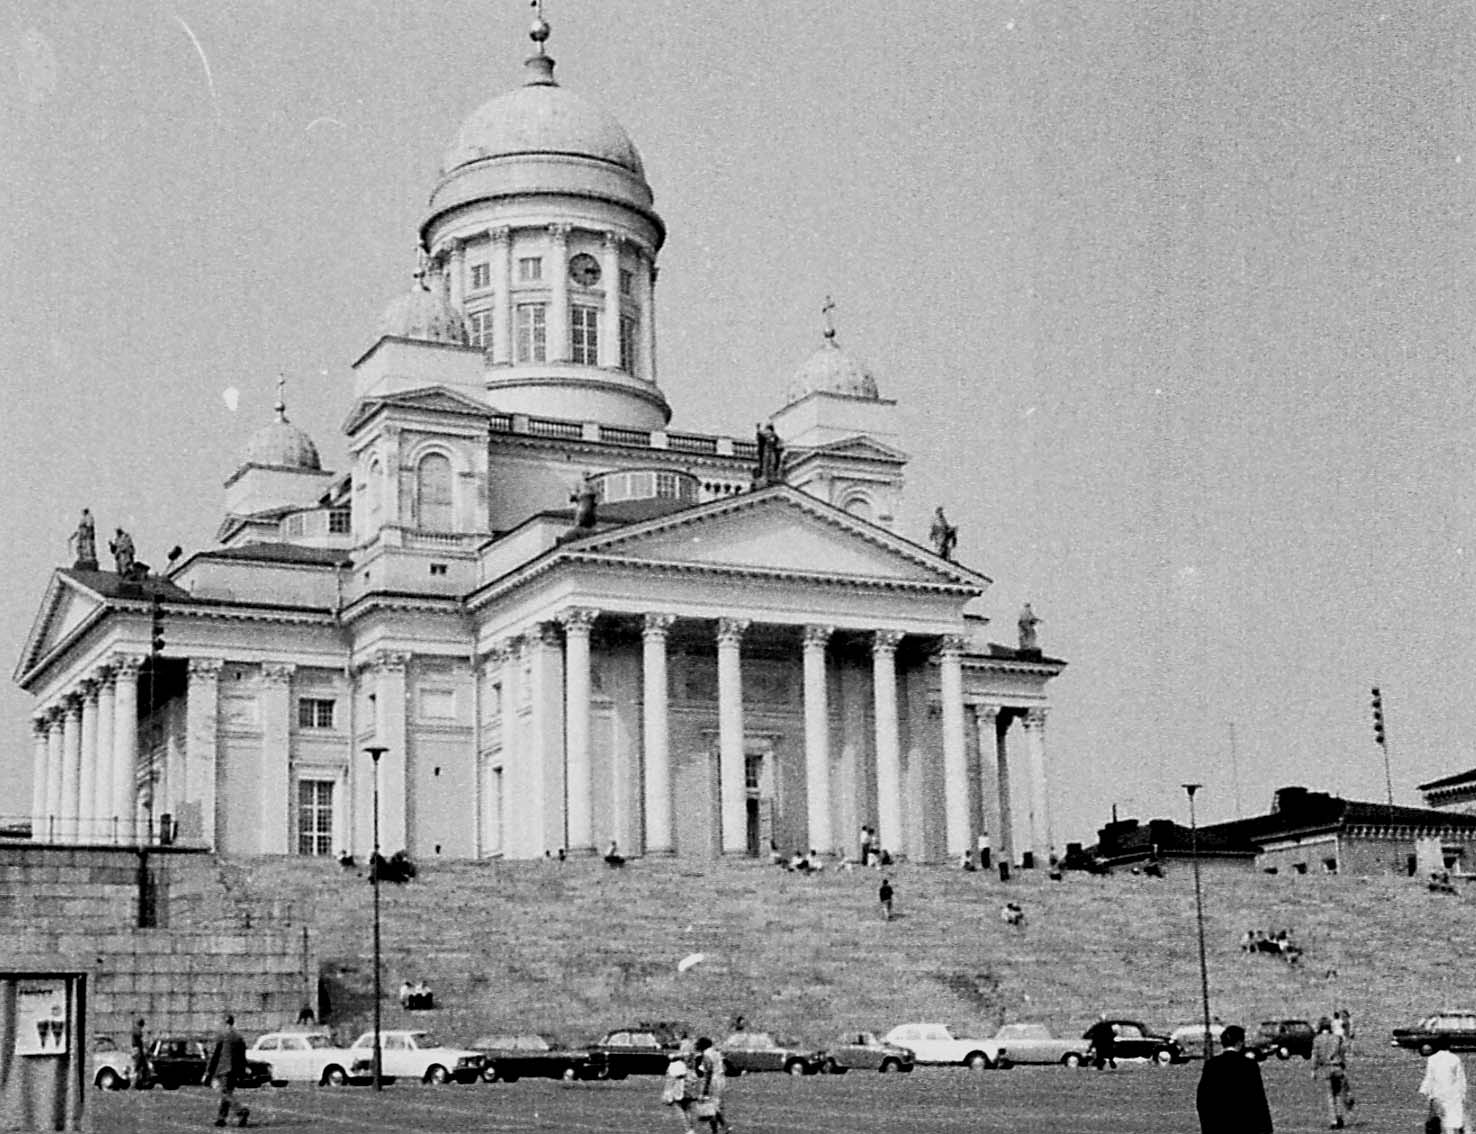 71-2717 Helsinki 1971 (51486656396) - Finland